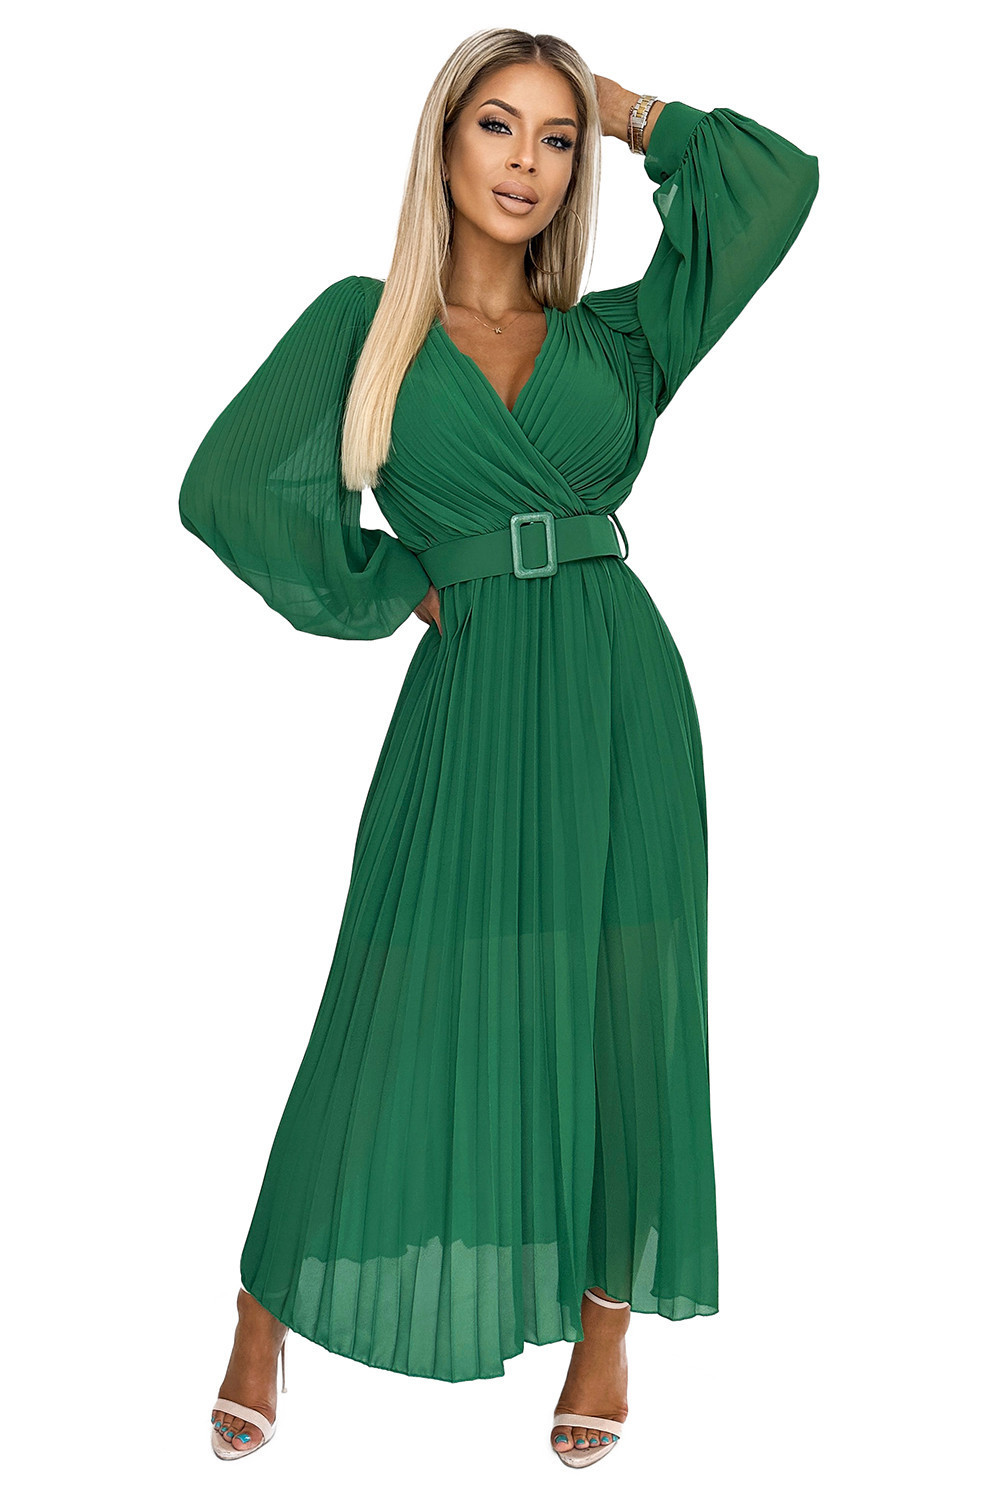 KLARA - Světle zelené dámské plisované šaty s výstřihem a opaskem 414-3 UNI